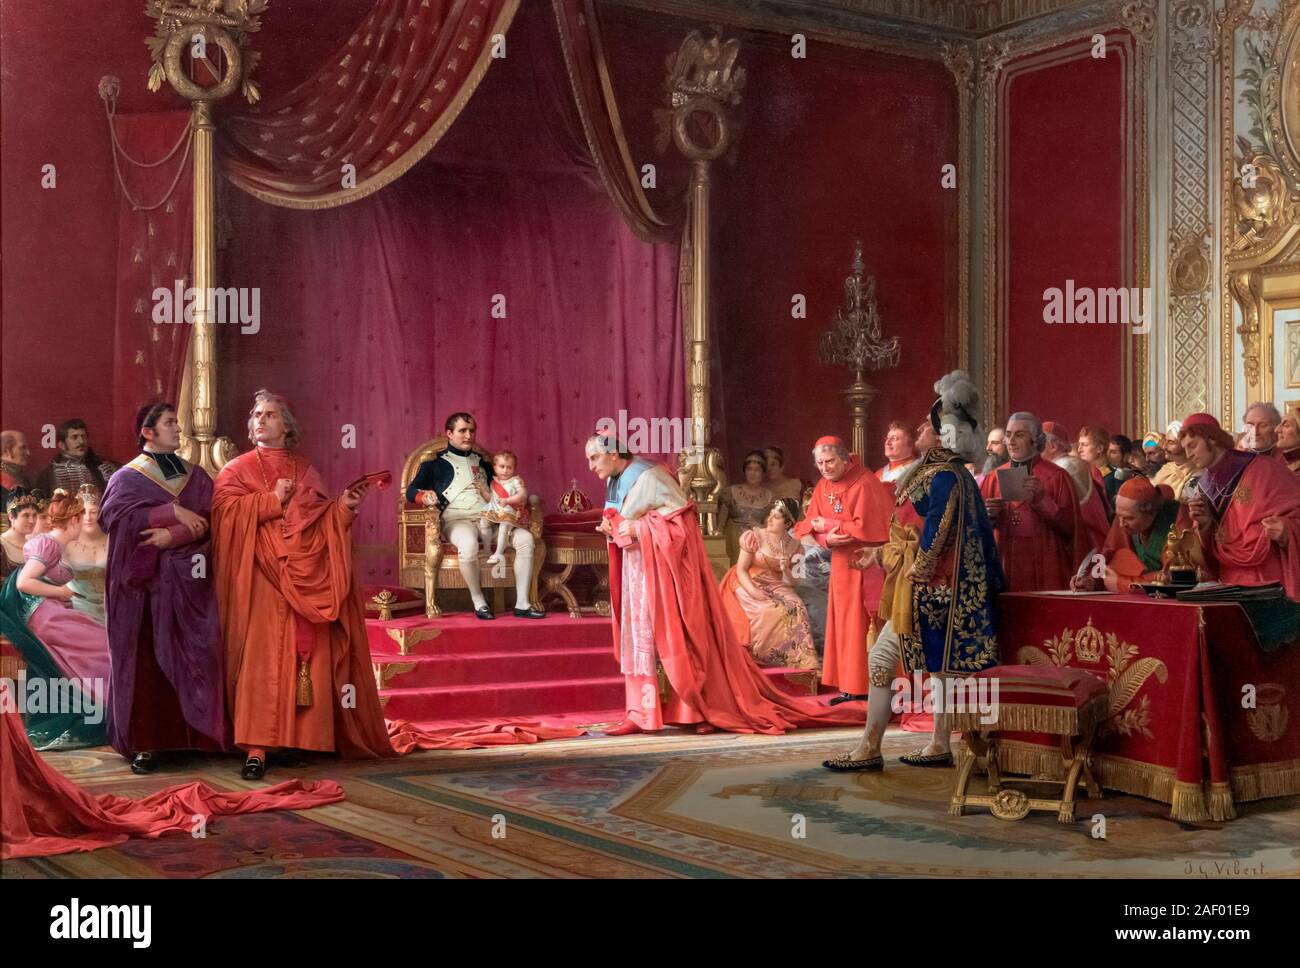 Le Roi de Rome par Jean Georges Vibert (1840-1902), huile sur toile sur panneau, 1900. Le tableau indique l'histoire de Napoléon Bonaparte forcer le pape à reconnaître son fils comme roi de Rome et, par conséquent, l'héritier d'un nouveau Saint Empire Romain. Banque D'Images